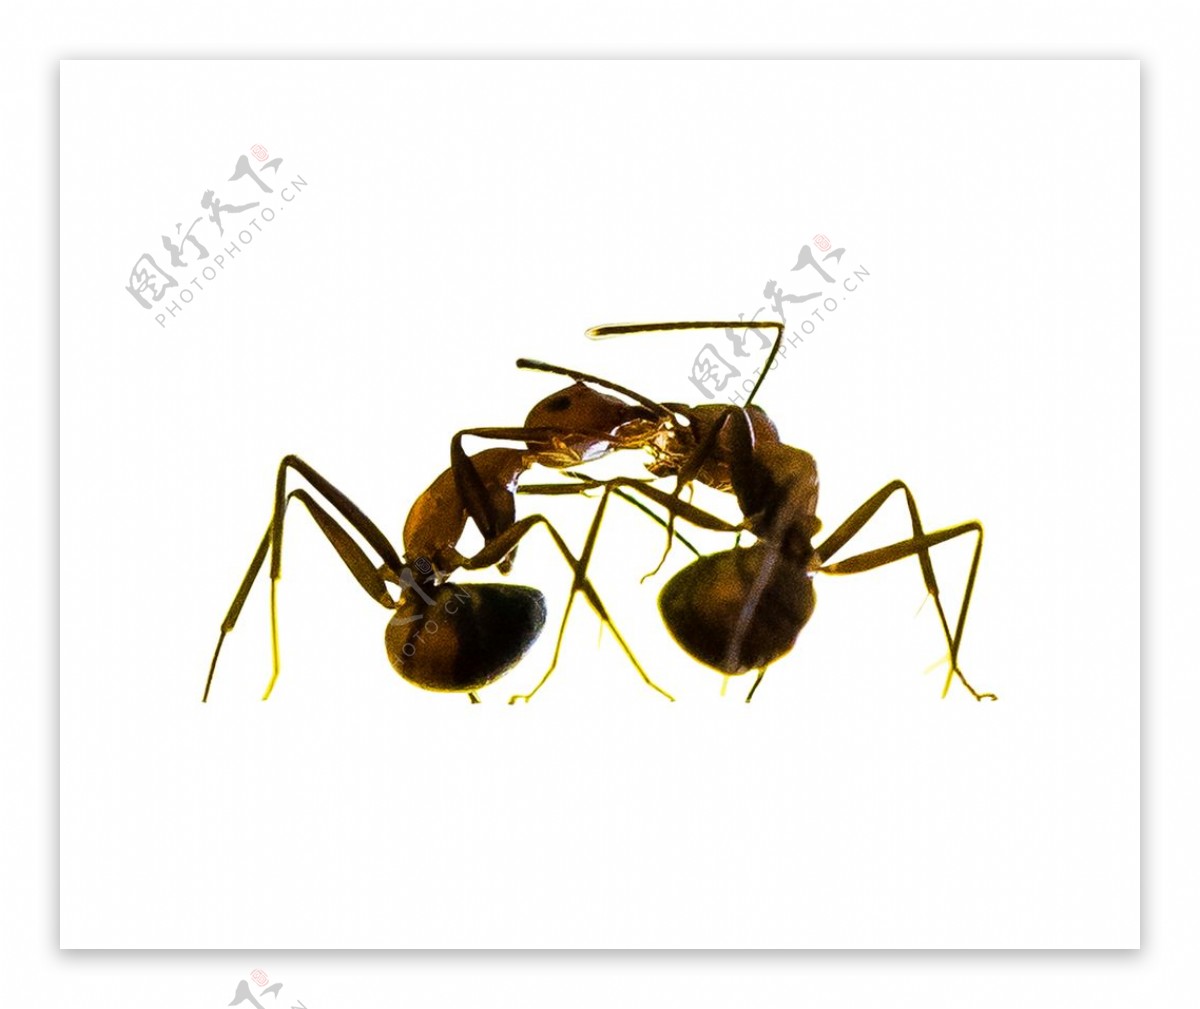 手绘蚂蚁素材图片